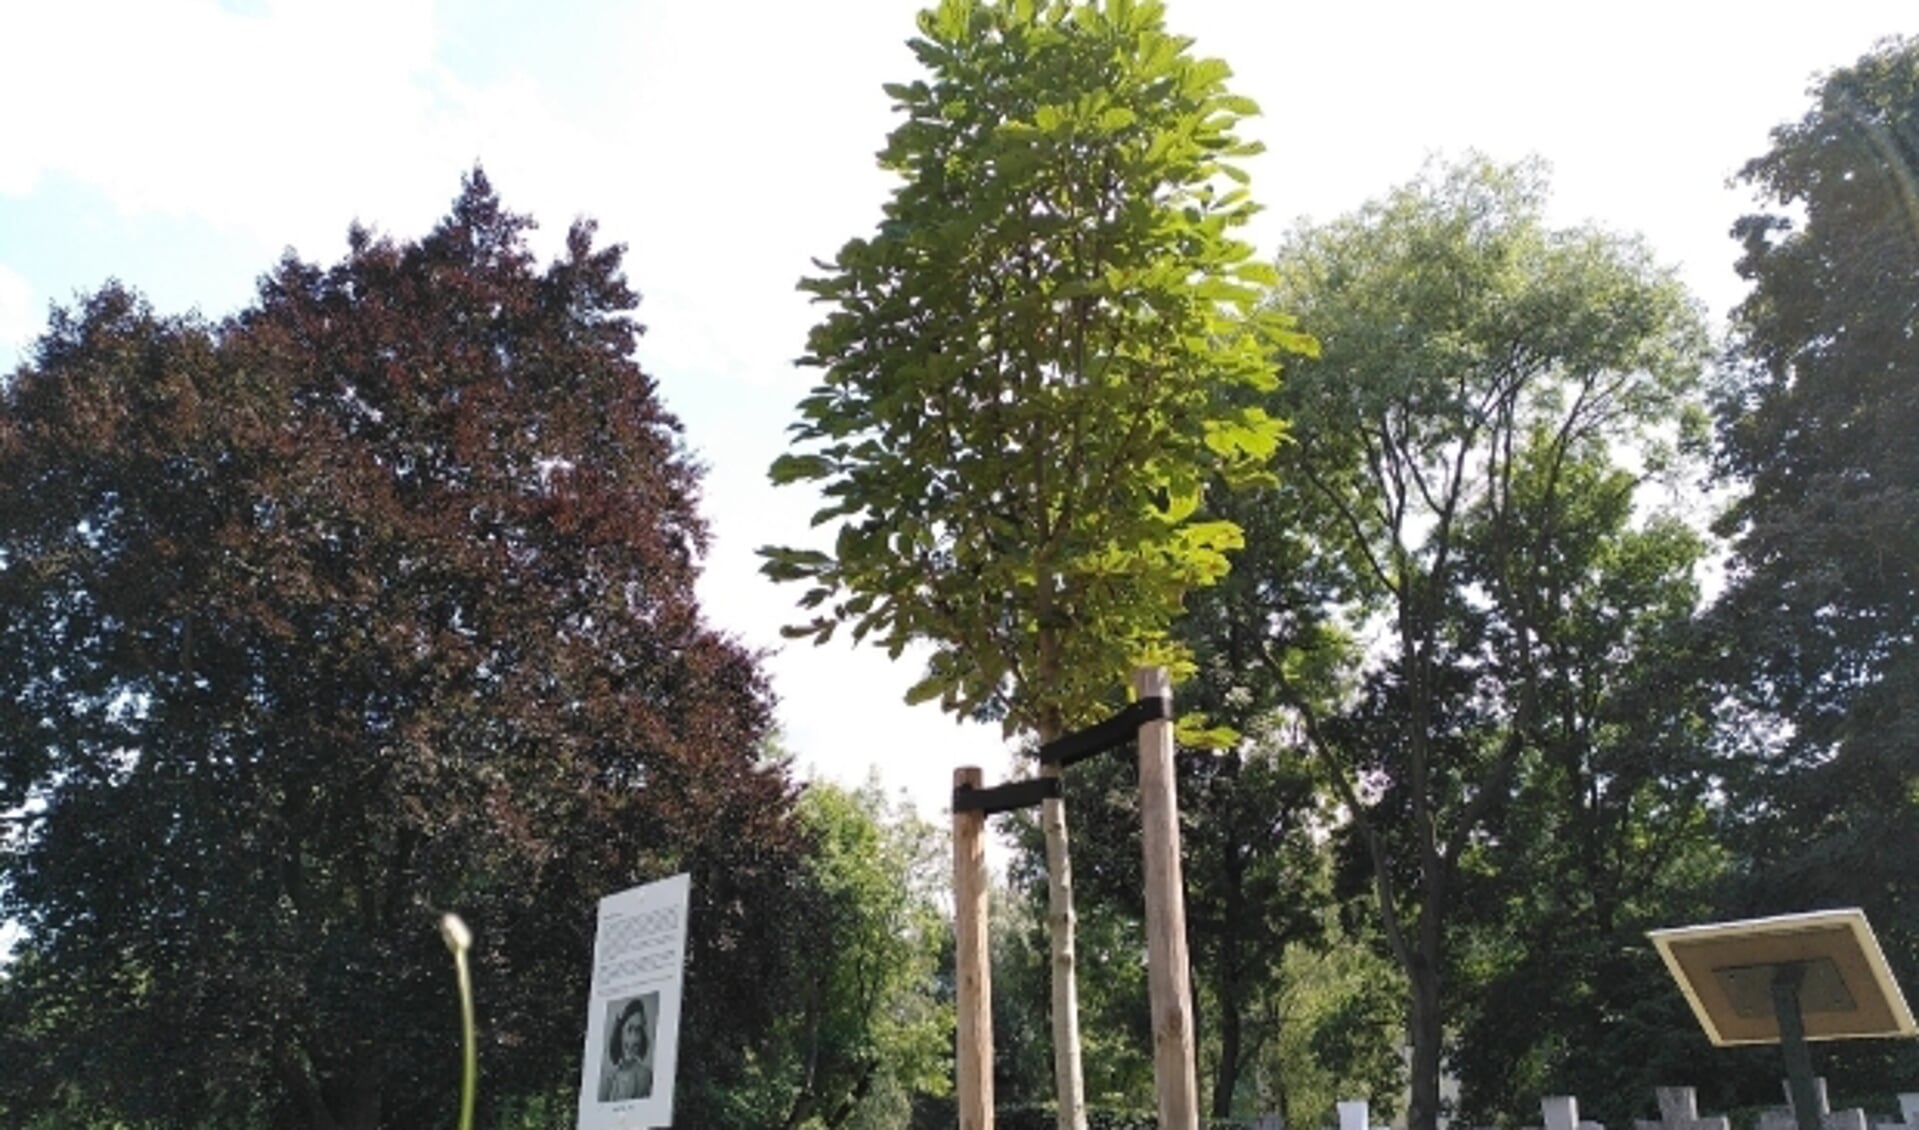 De vele herdenkingsbomen zijn onder andere geplant ter ere van hoogtijdagen van ons Koningshuis, de zogenaamde koningslindes. 